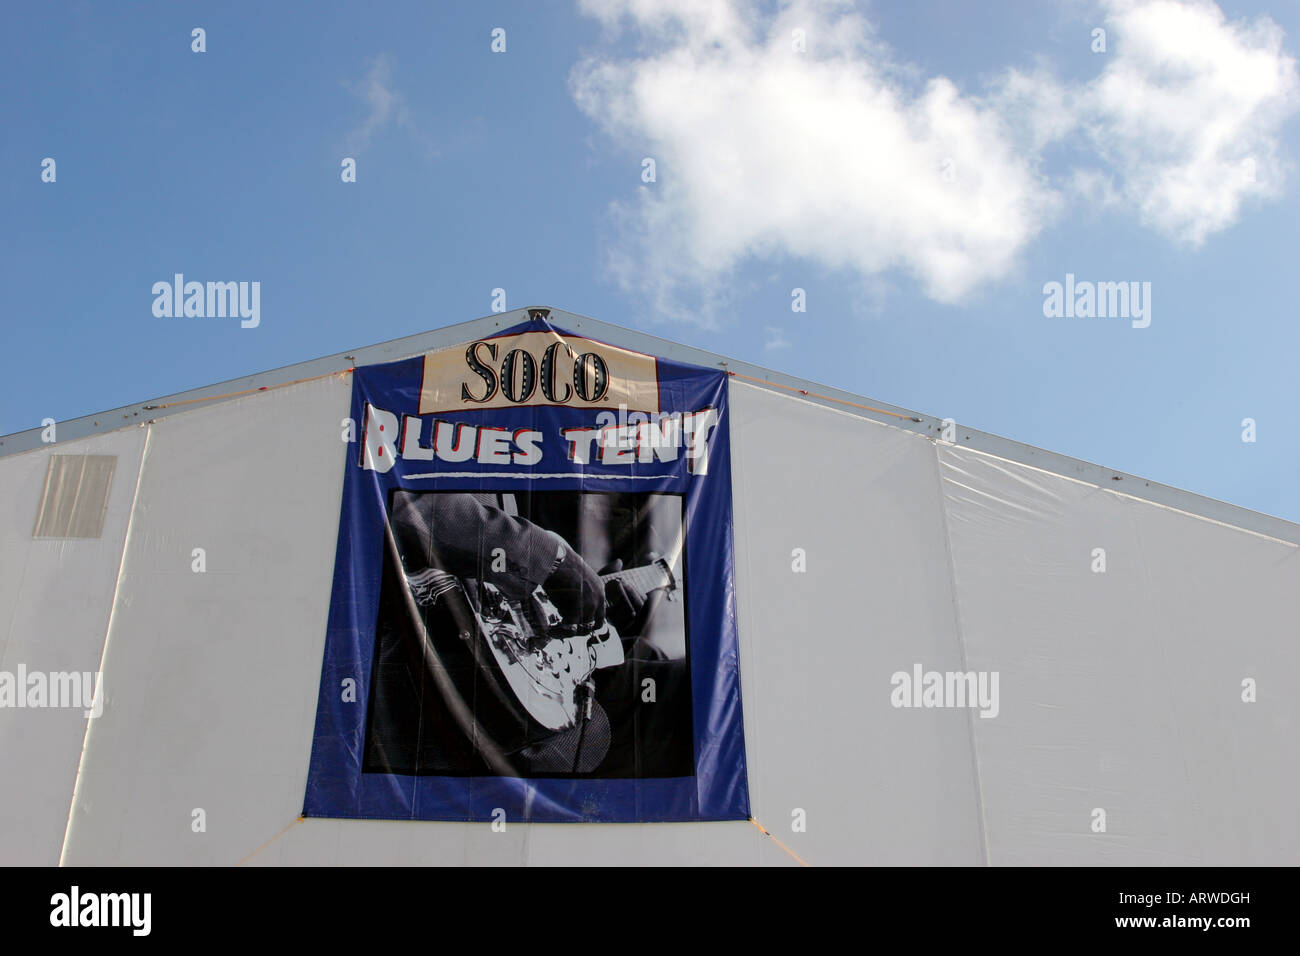 Blues tente panneau au New Orleans Jazz & Heritage Festival Banque D'Images